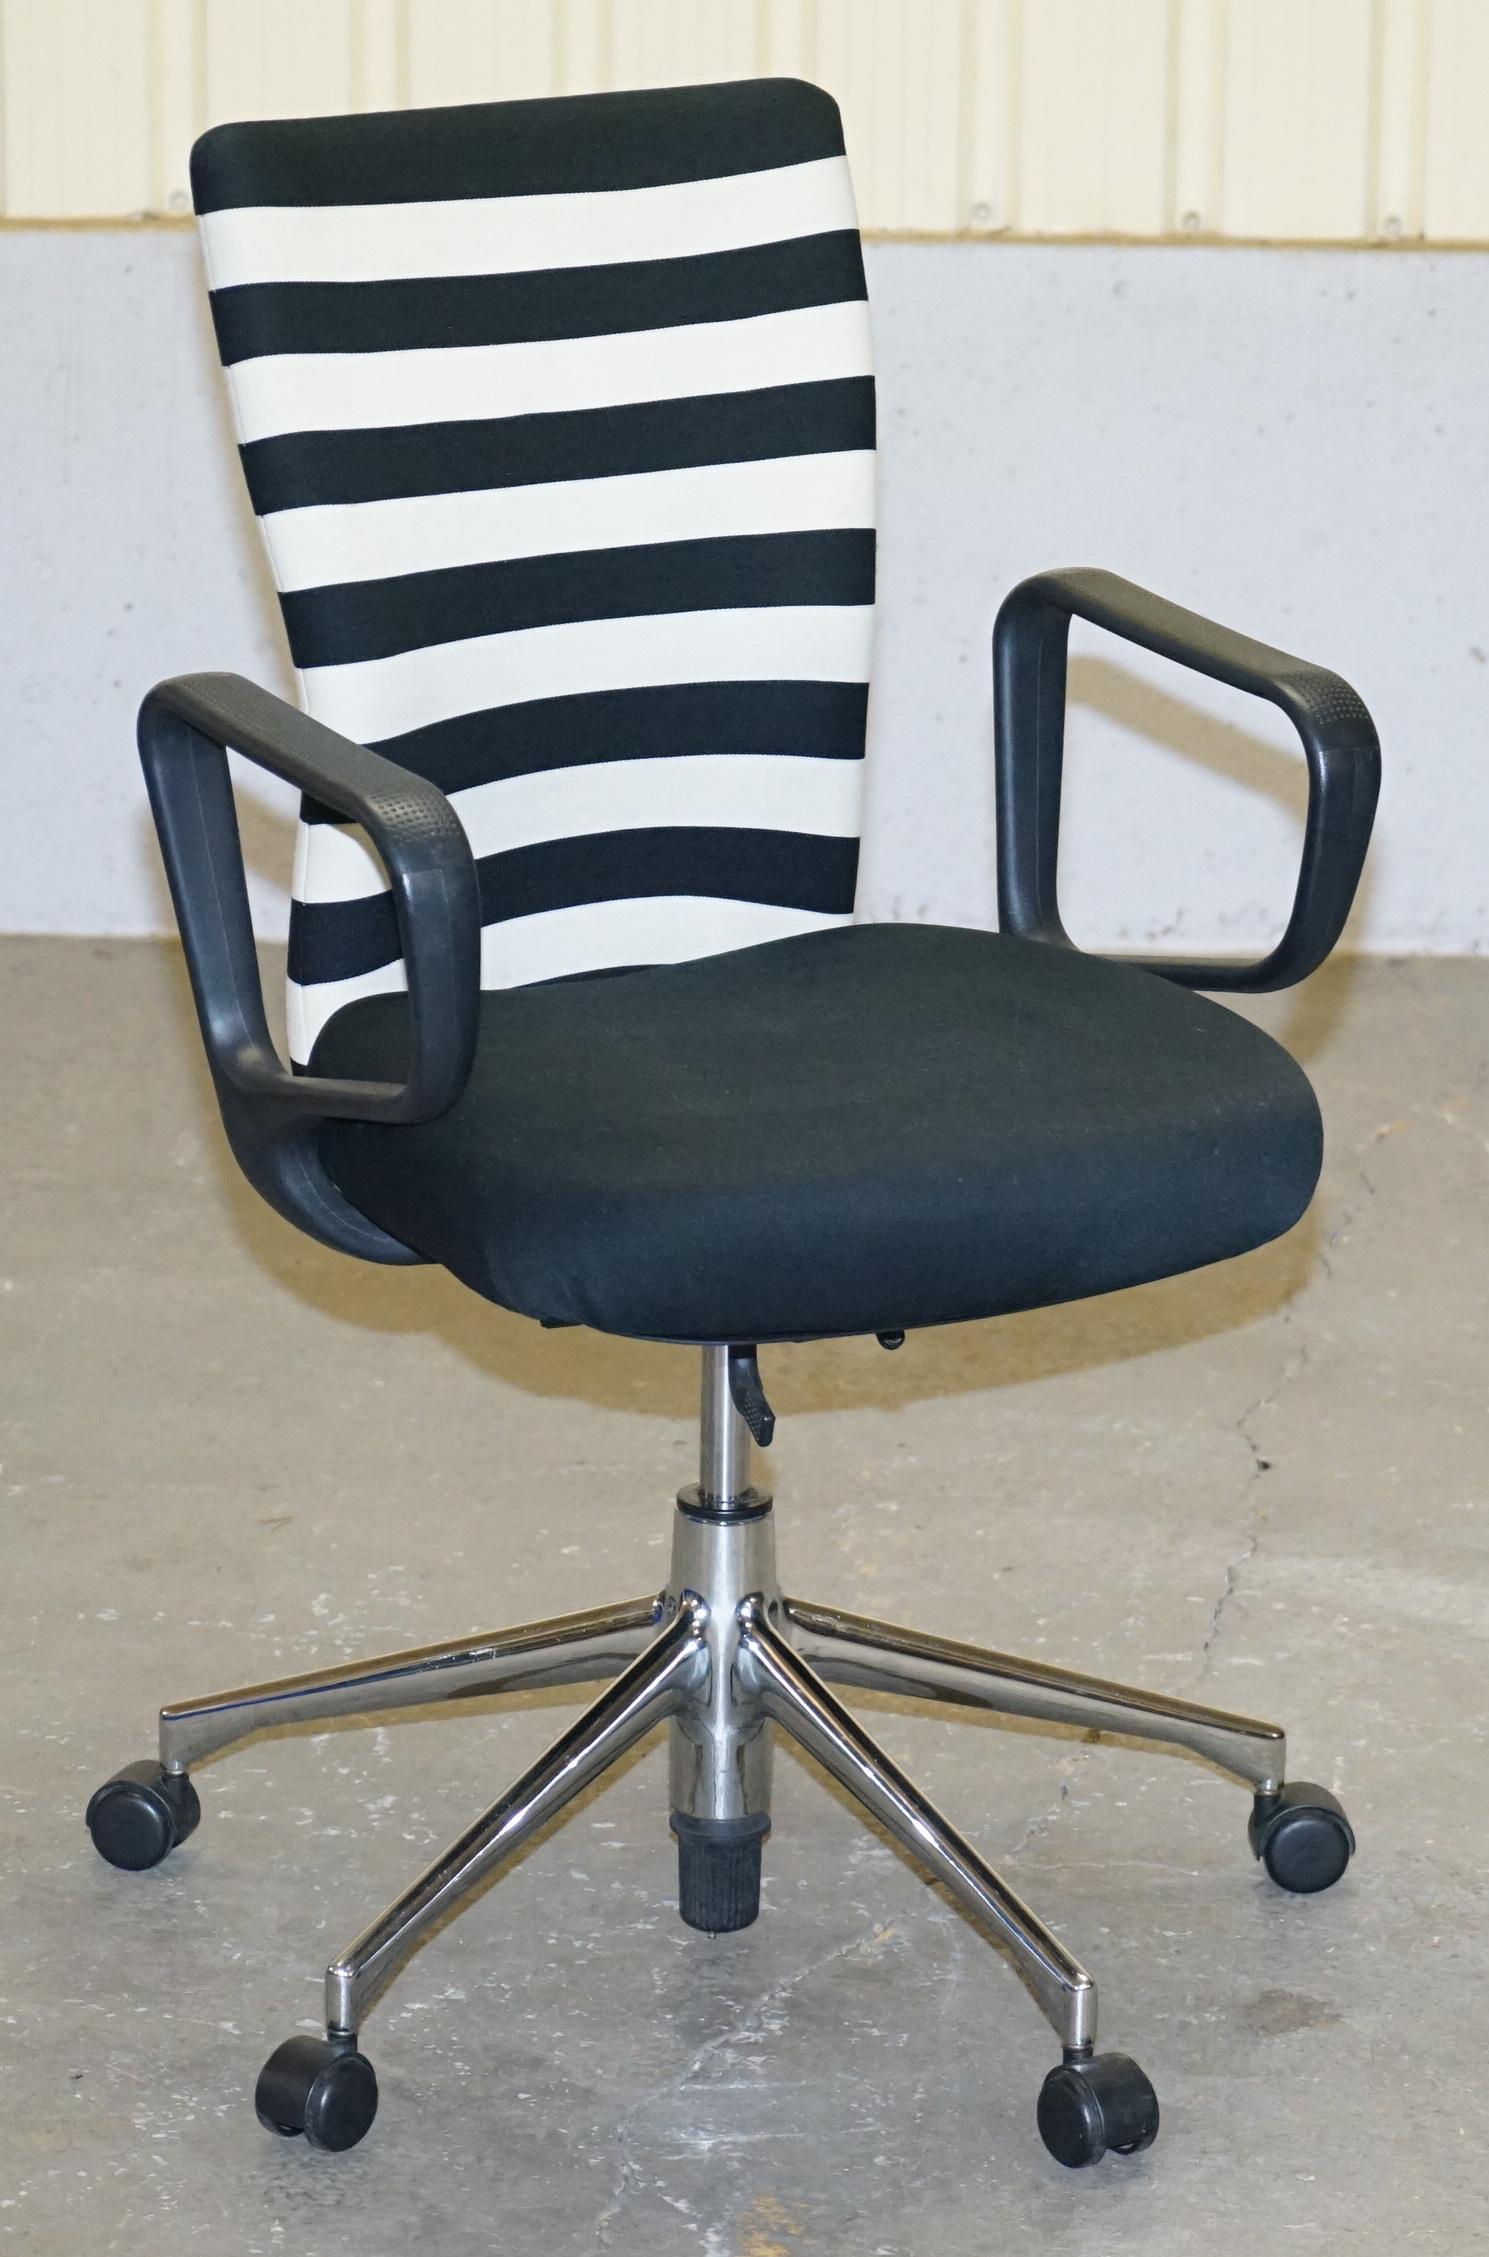 Nous avons le plaisir de proposer à la vente 1 de 2 chaises de bureau pivotantes ergonomiques Vitra d'origine.

Cette vente concerne un fauteuil avec possibilité d'acheter la paire.

Il est exceptionnellement confortable, il pivote, vous pouvez